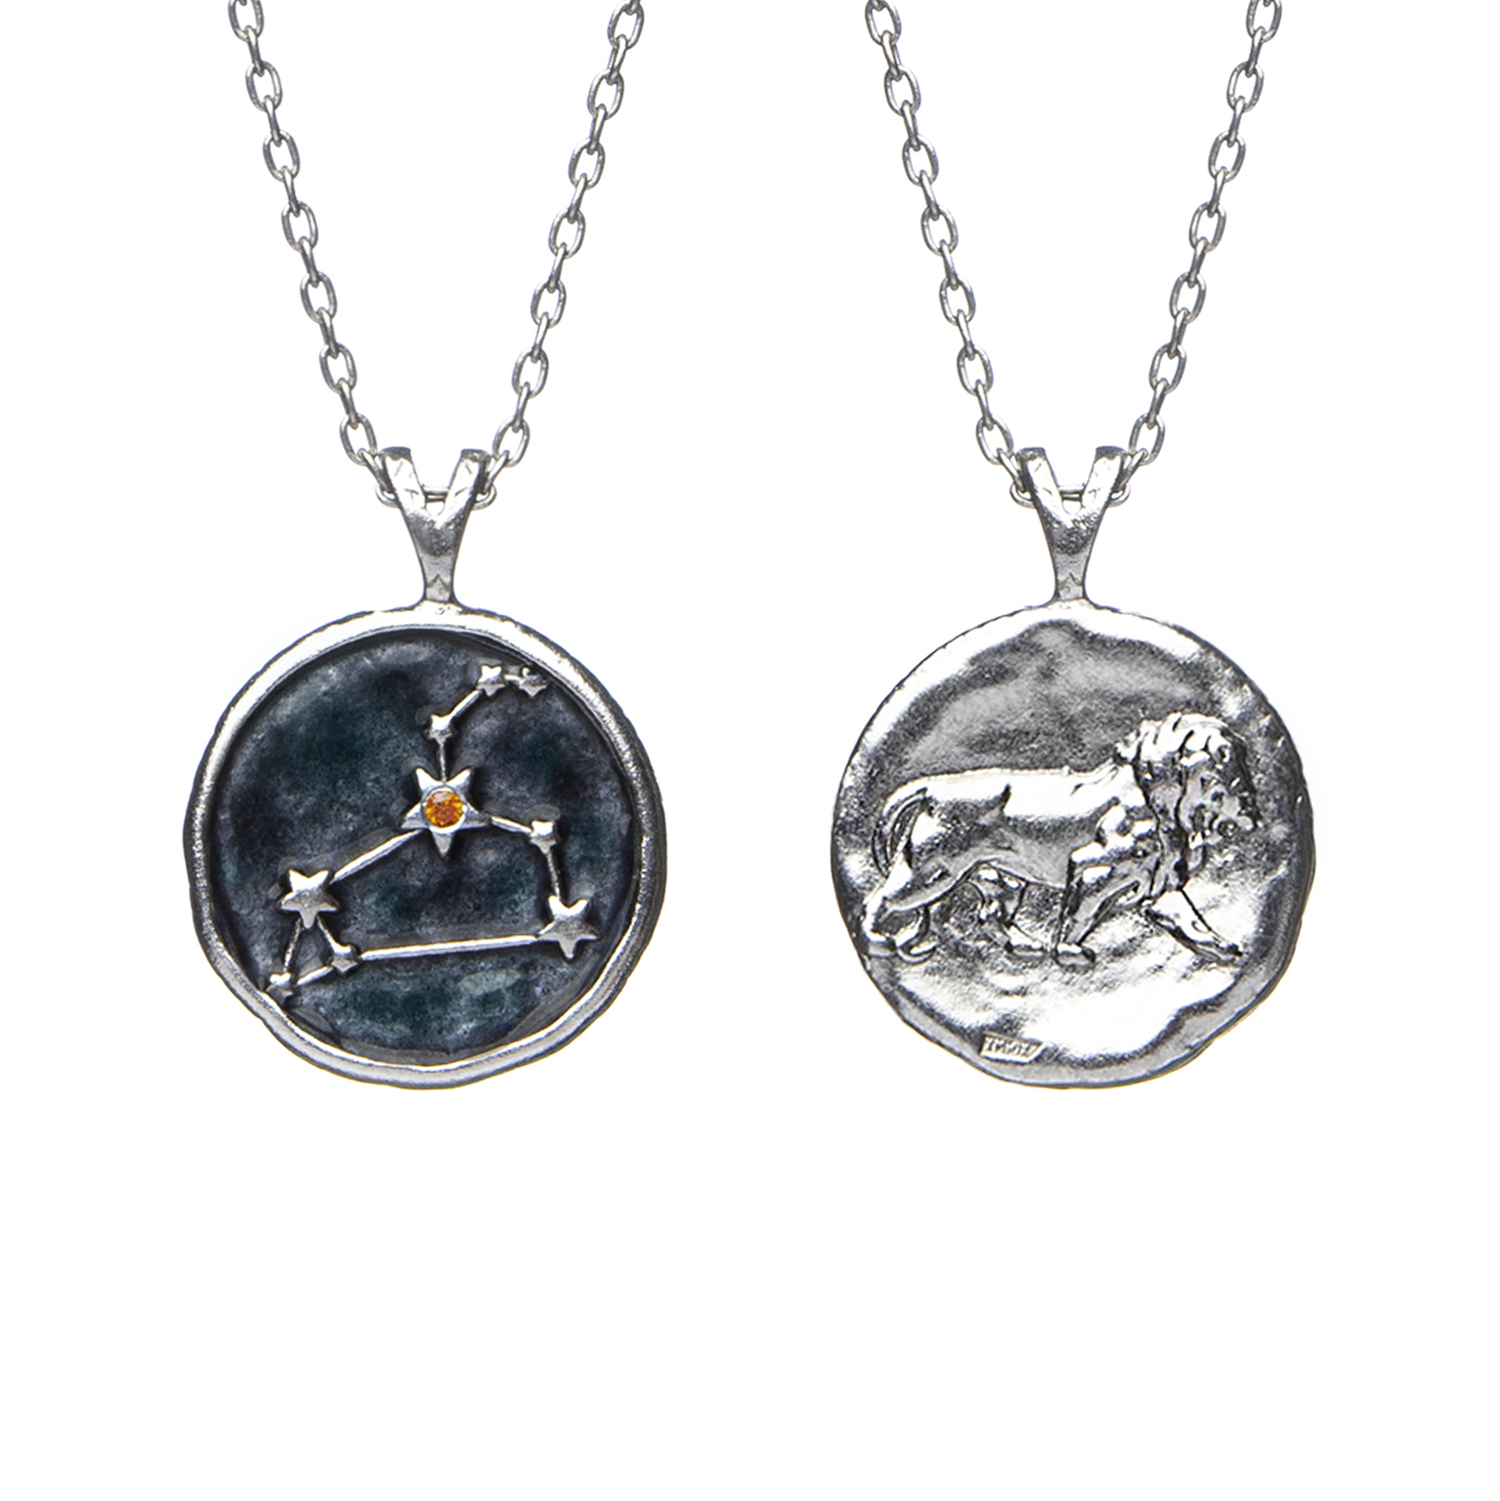 Кулон Знак зодиака Лев на цепочке серебро 925 Amorem для женщин купить вСтаром Осколе и характеристики - SKU10016541